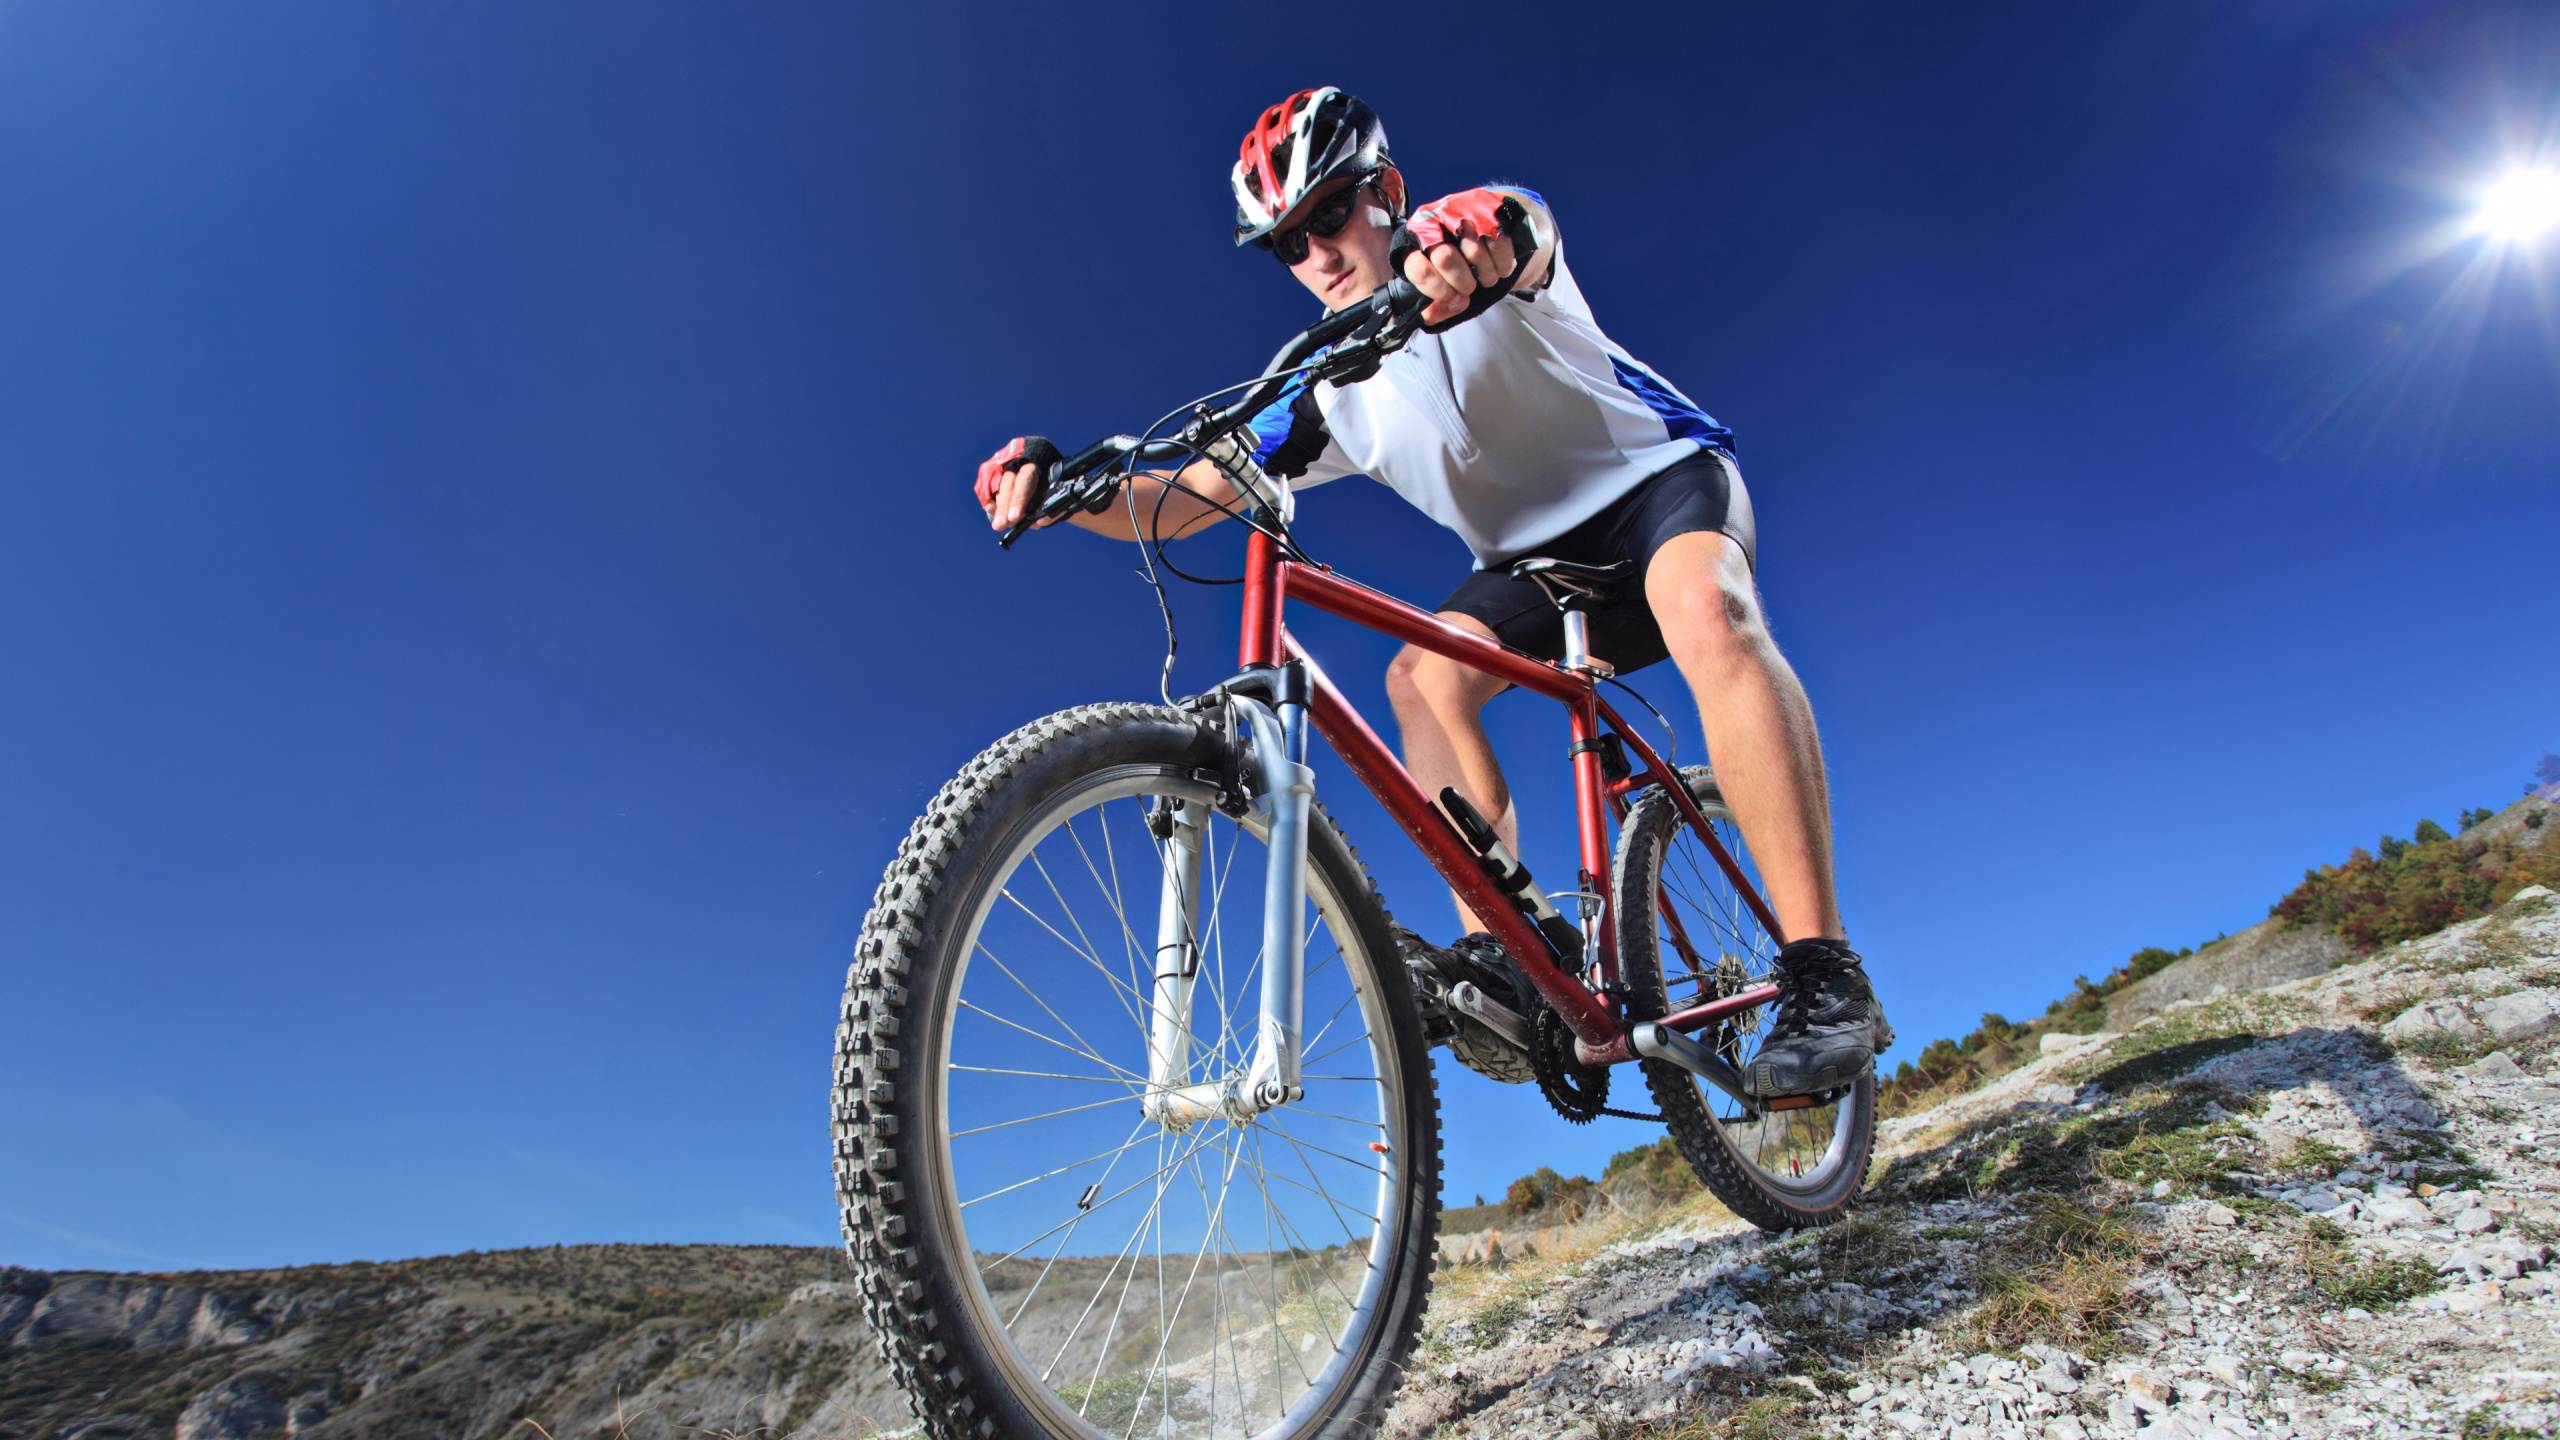 自行车, 高山山地自行车, 山地自行车, 骑自行车, 循环的运动 壁纸 2560x1440 允许